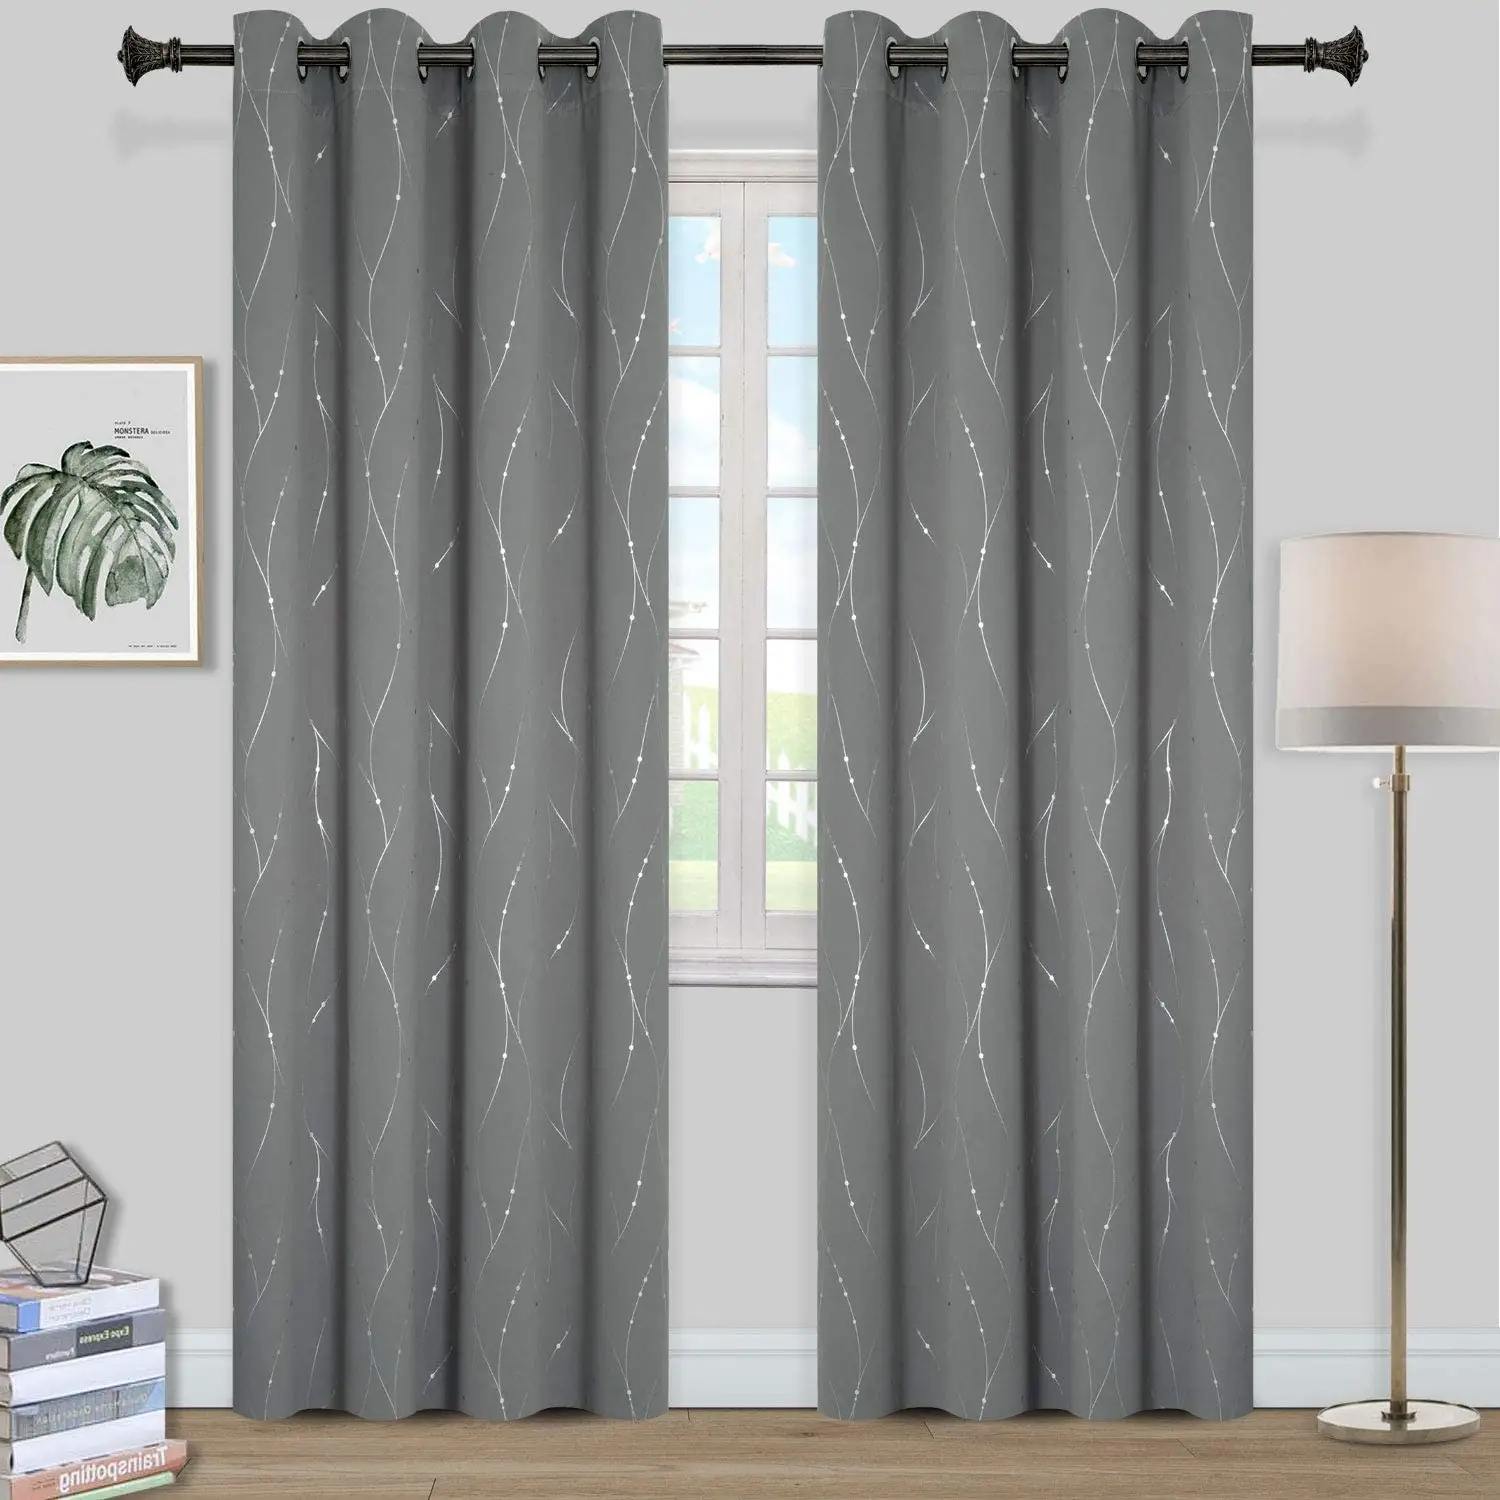 Ojal-cortinas opacas de lujo, ventanas con aislamiento térmico, línea de onda y patrón de puntos